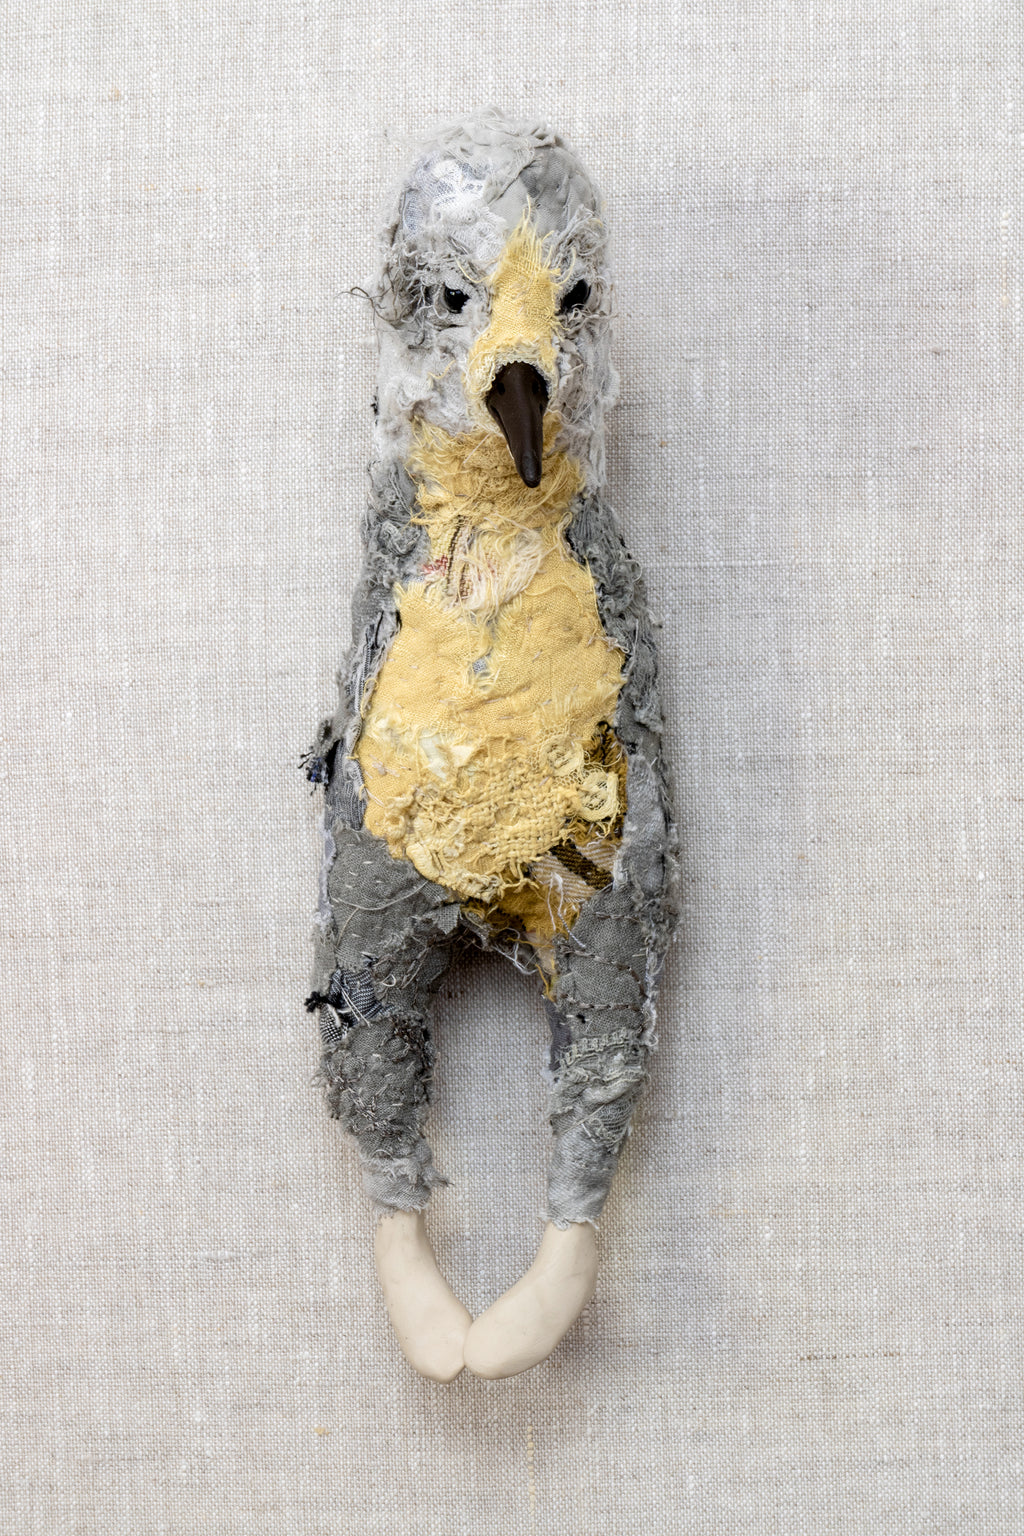 Stanley - textile bird sculpture